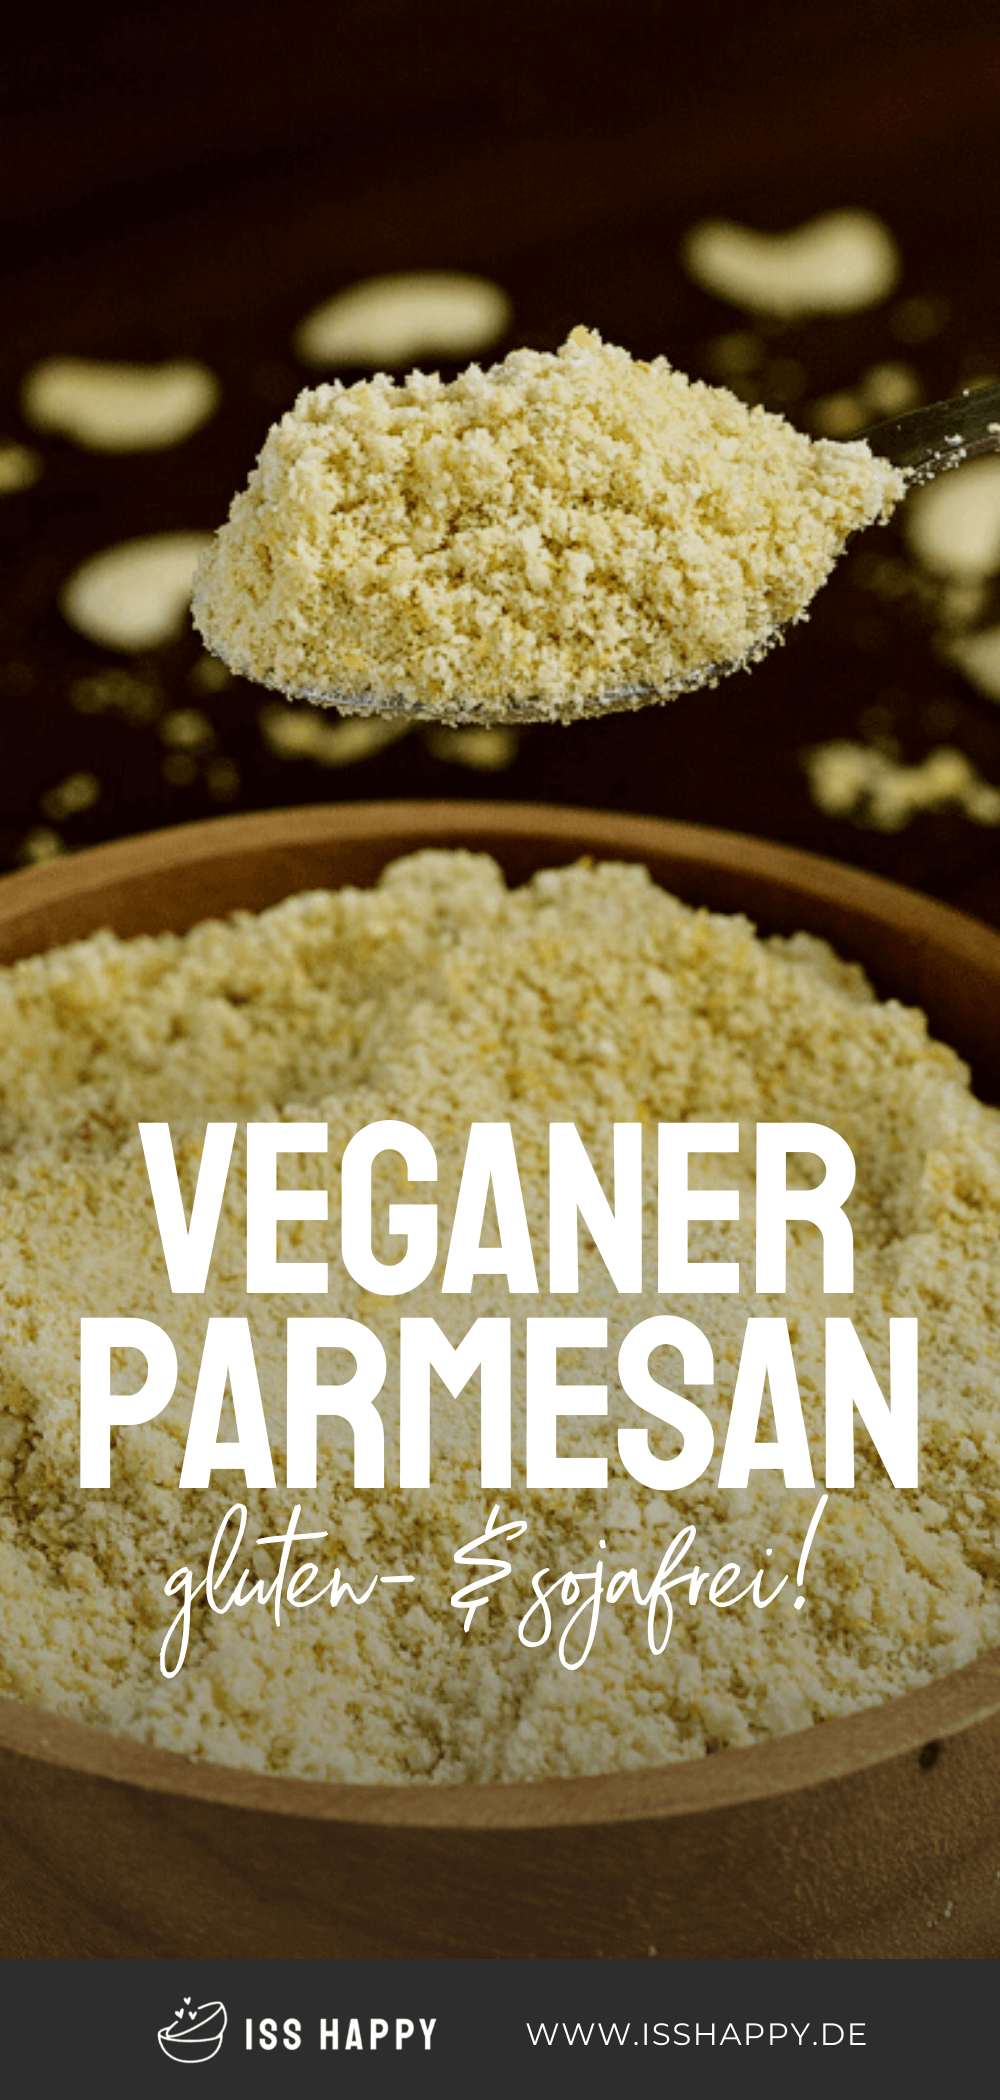 Veganer Parmesan - pflanzliche Alternative (gluten- und sojafrei)